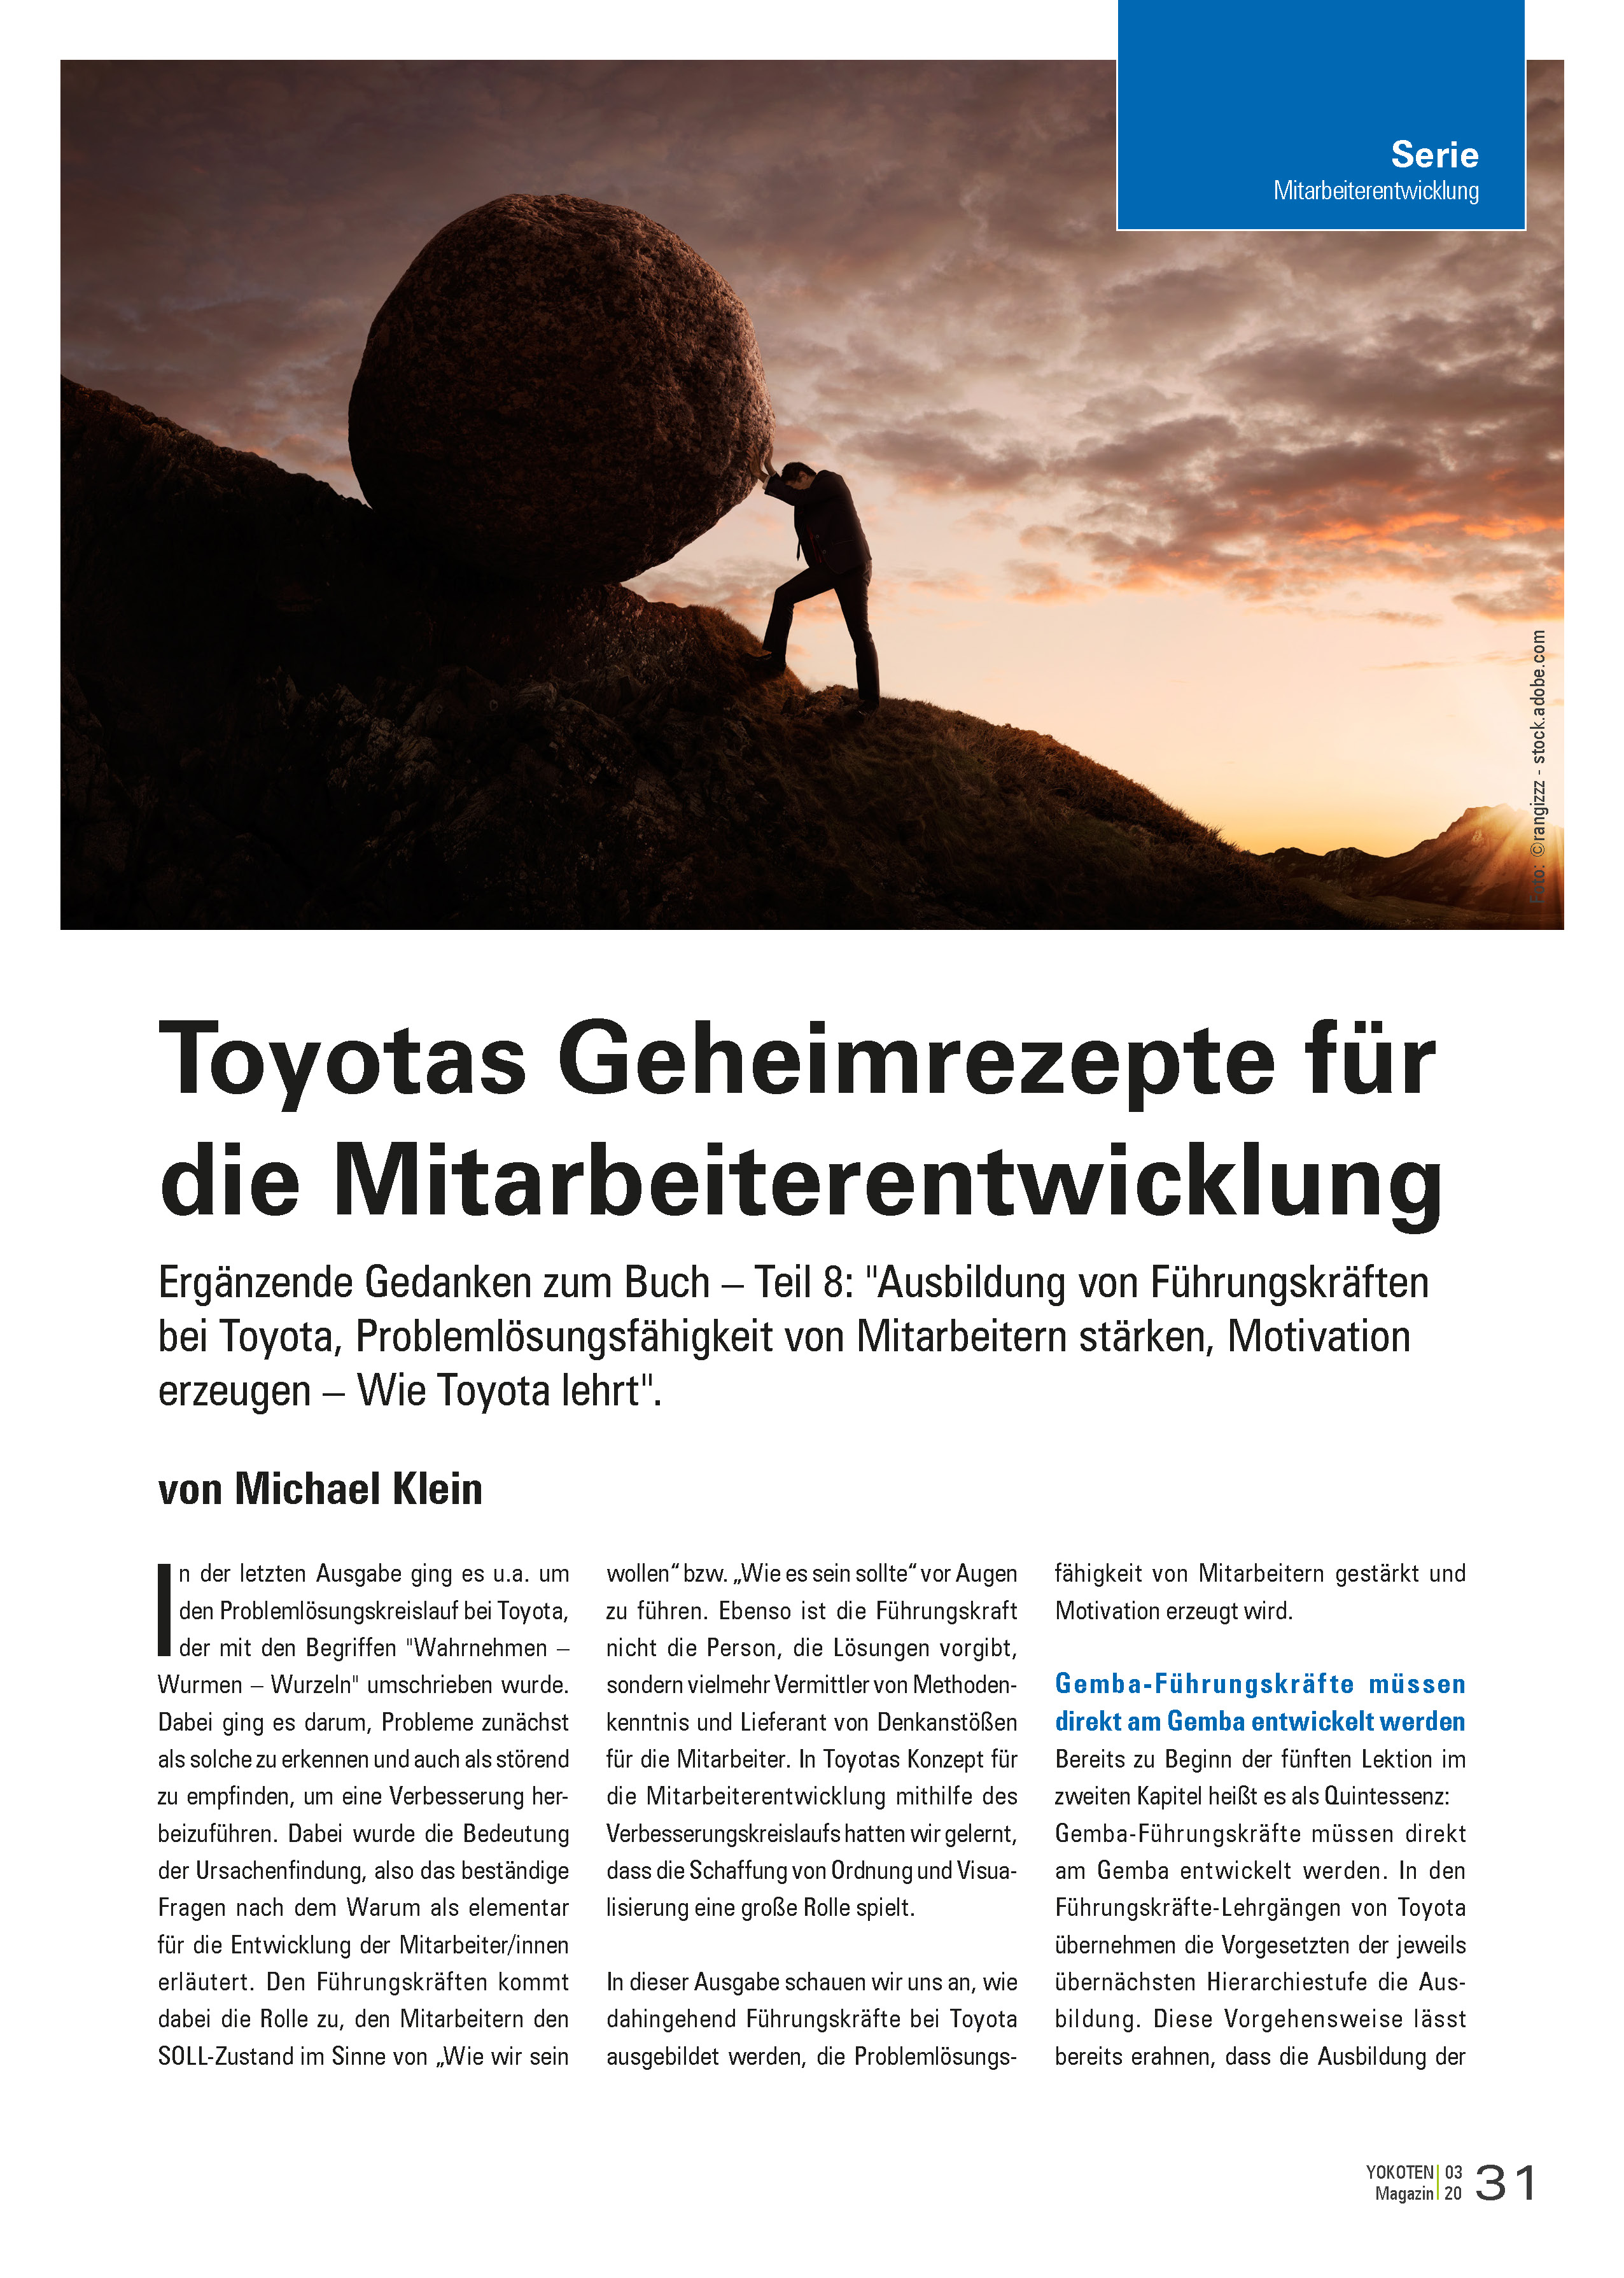 YOKOTEN-Artikel: Toyotas Geheimrezepte für die Mitarbeiterentwicklung